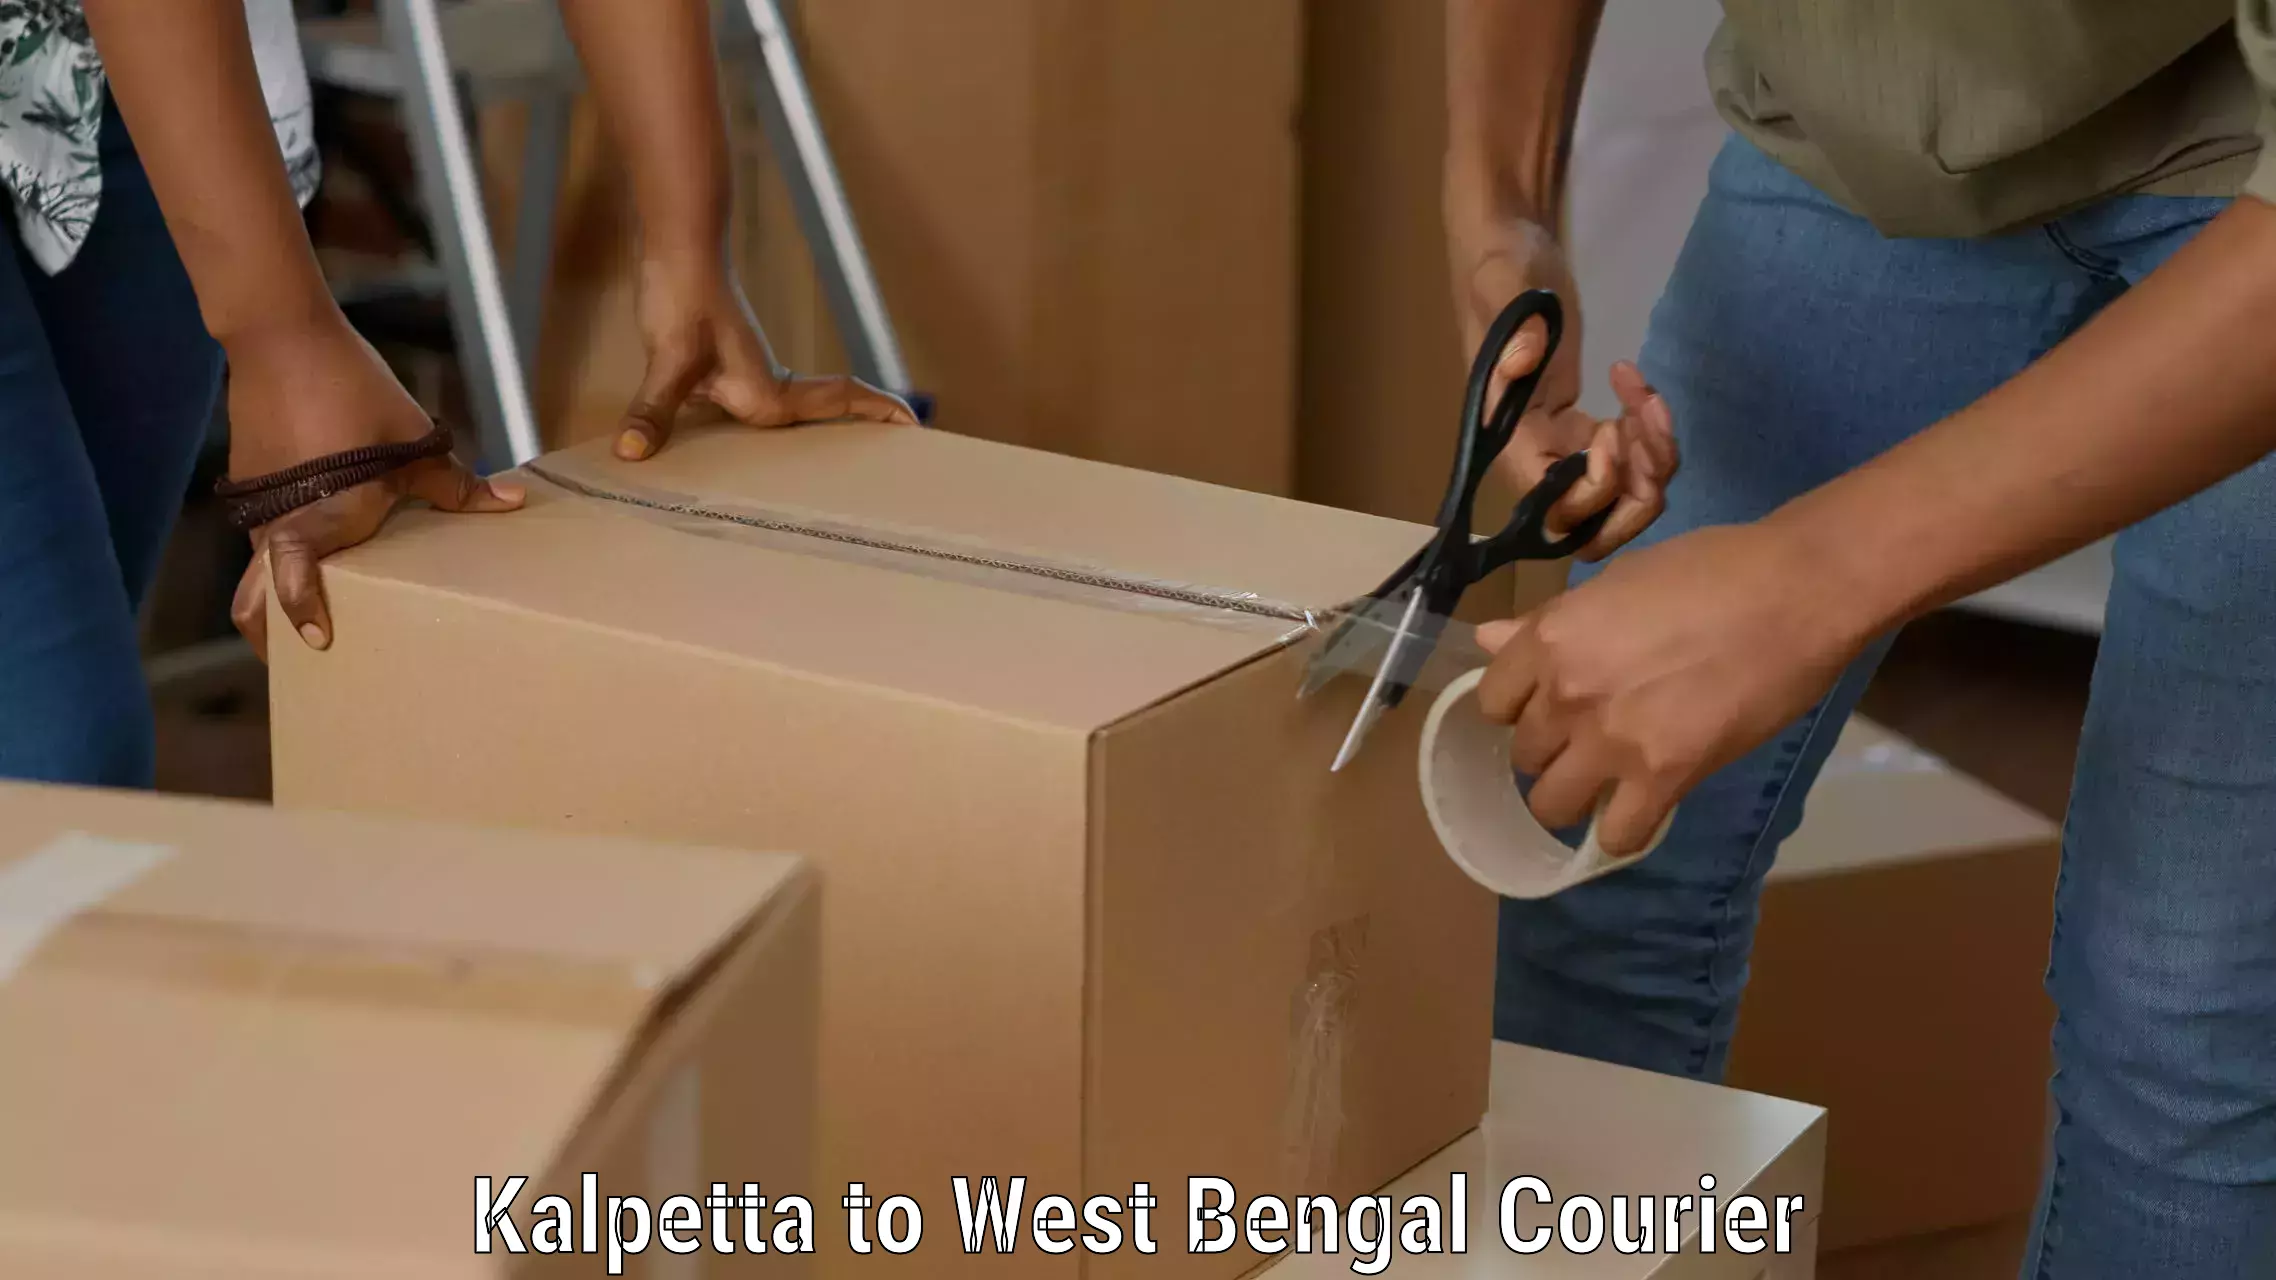 Courier service booking Kalpetta to Haldia port